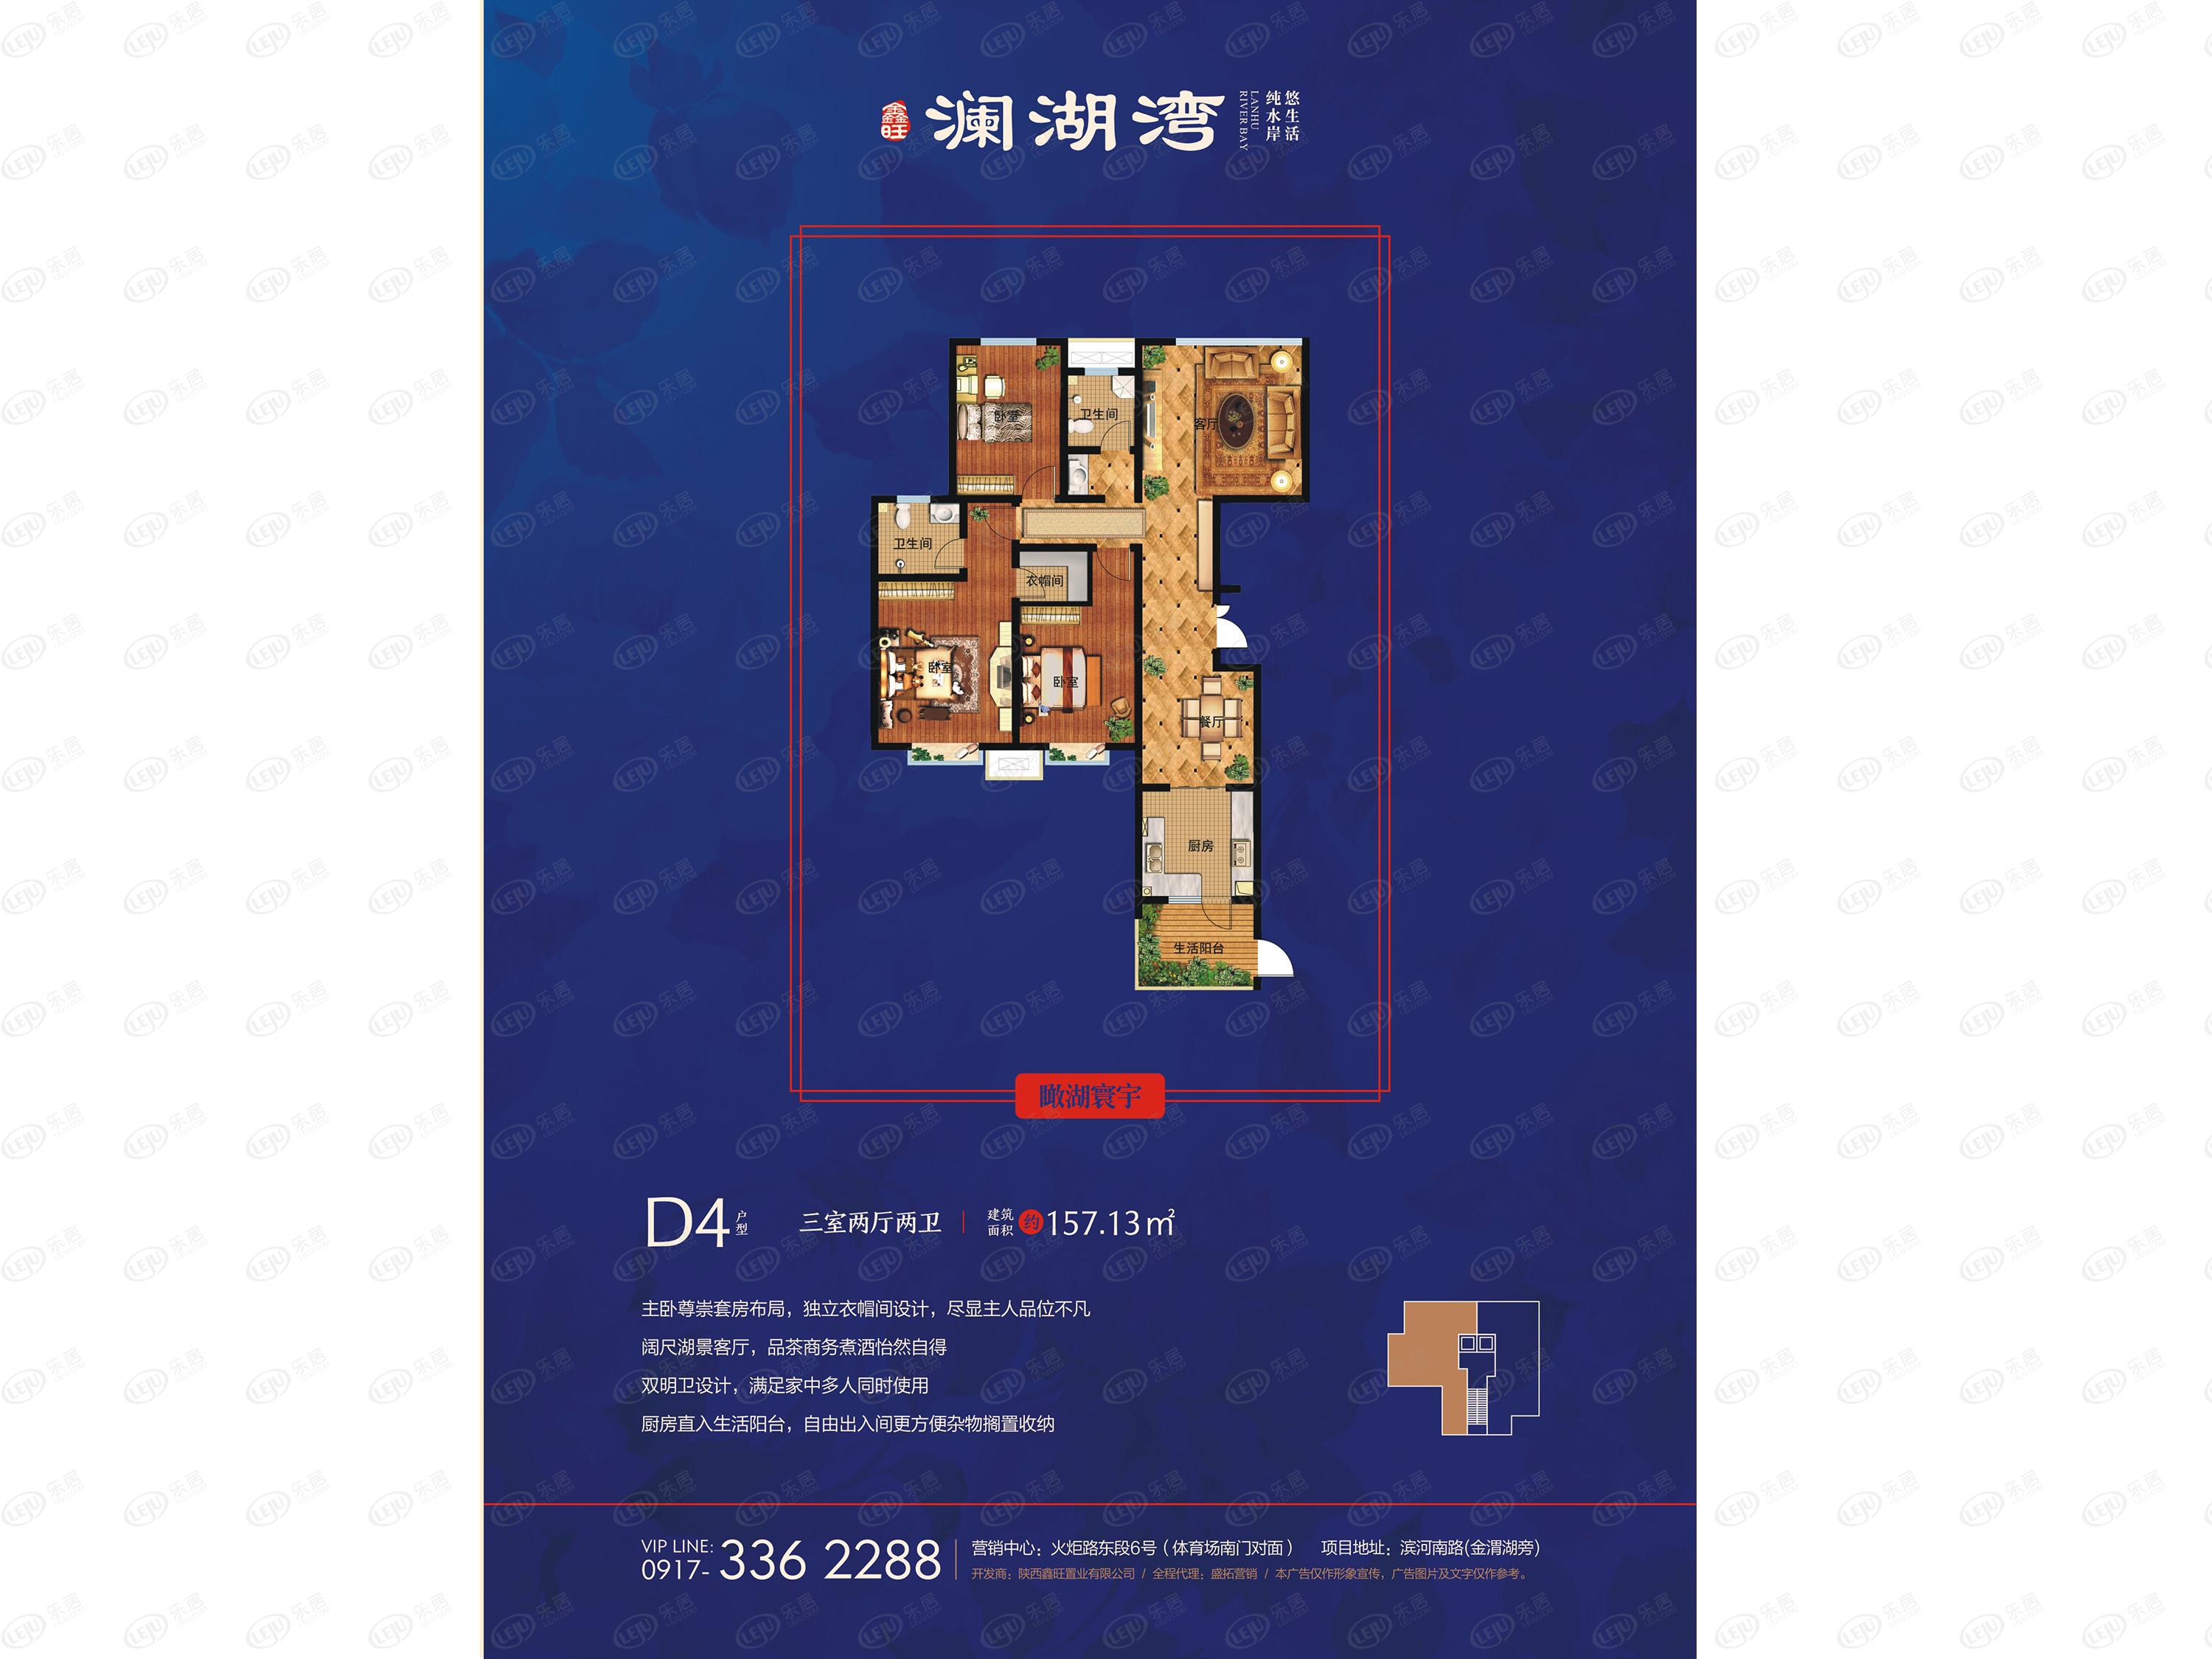 鑫旺·澜湖湾三居室户型公布 均价约6300元/㎡